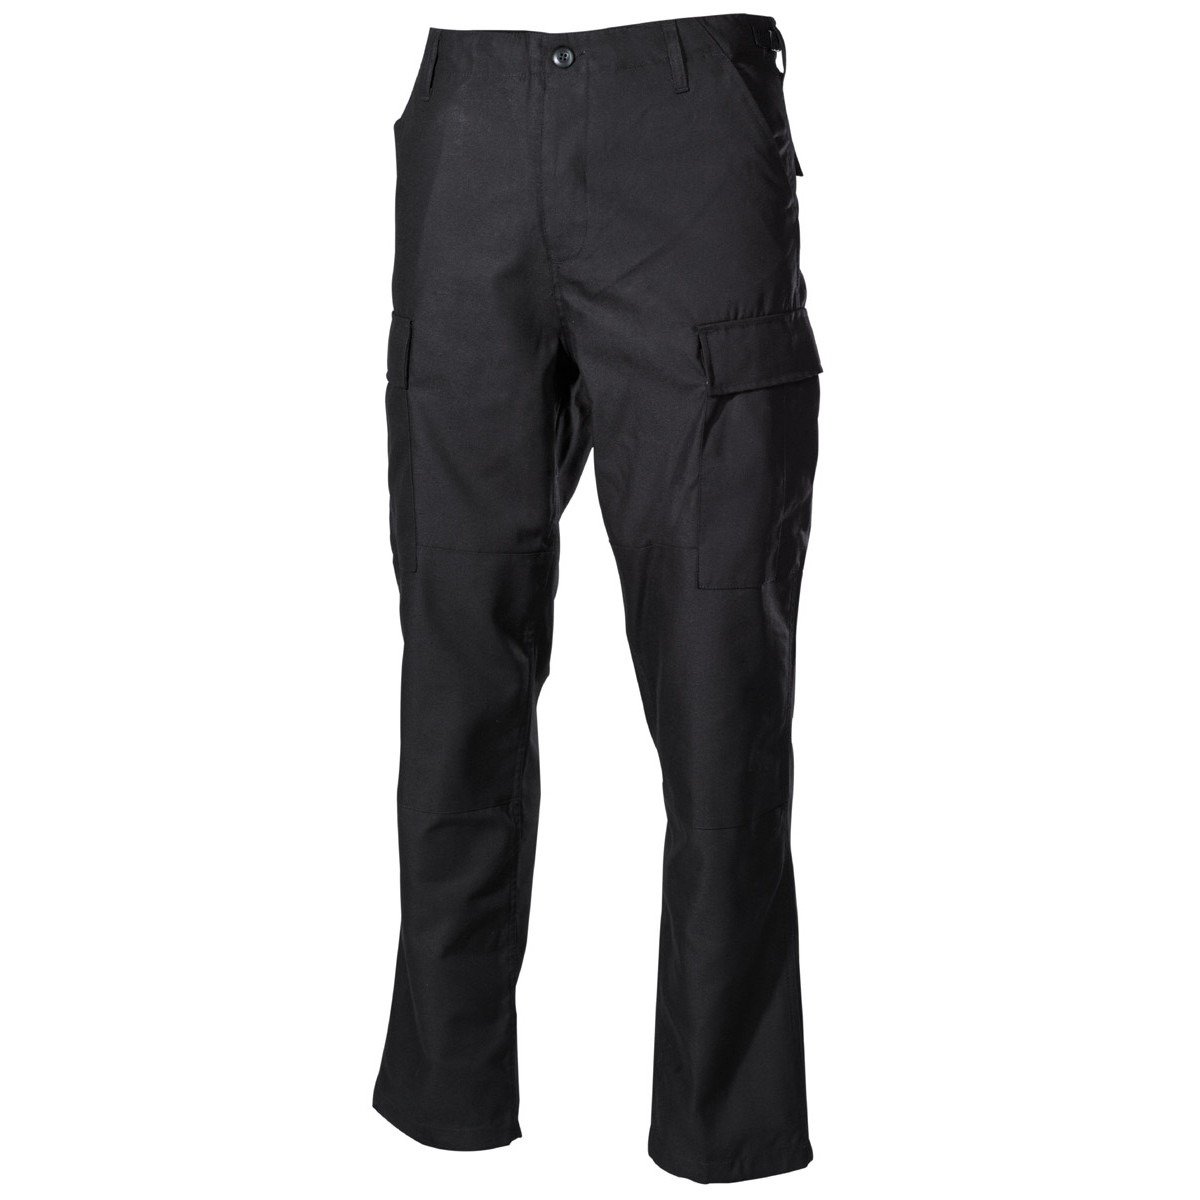 US BDU Field Pants, black, reinforced knees and seat Black | Apparel ...